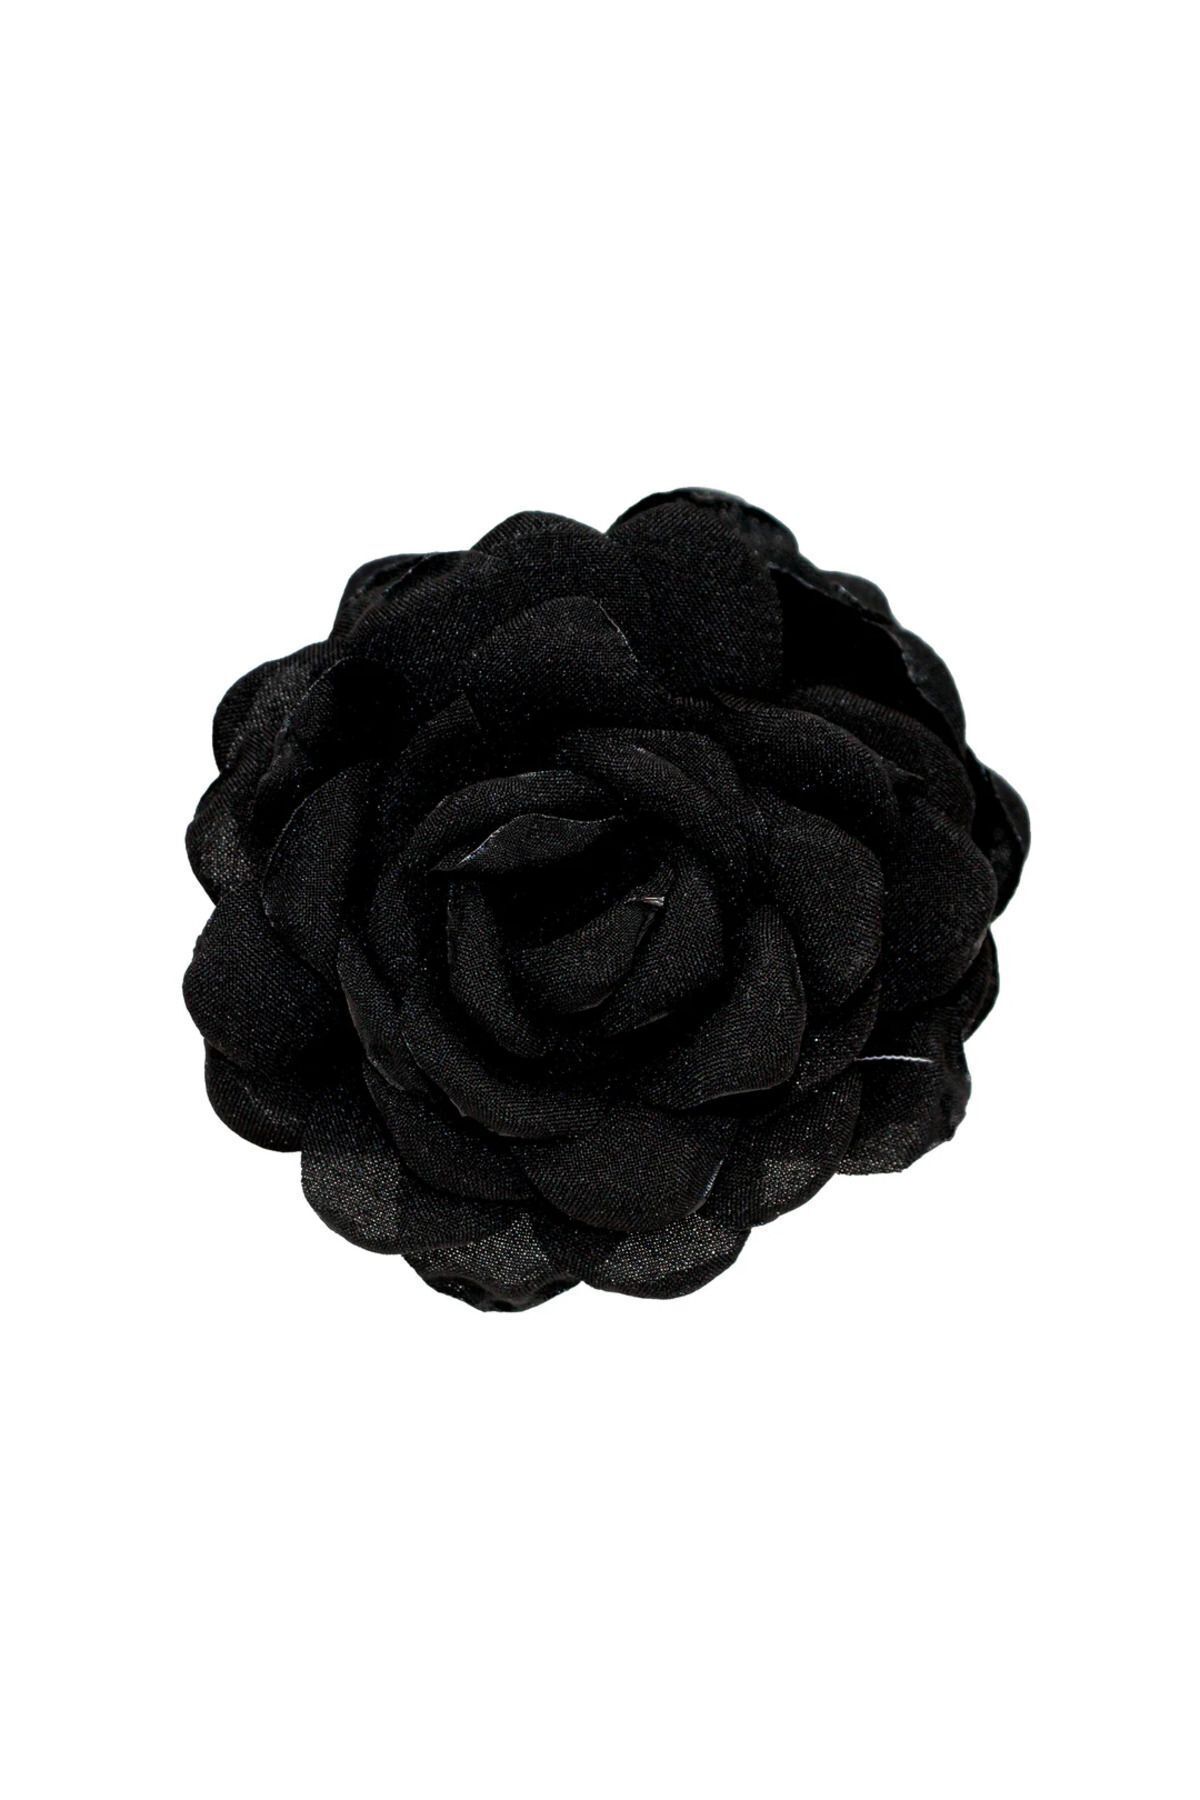 Roberta Lorenz Siyah Gül Mandal Toka / Çiçekli Toka / Yüksek Kalite